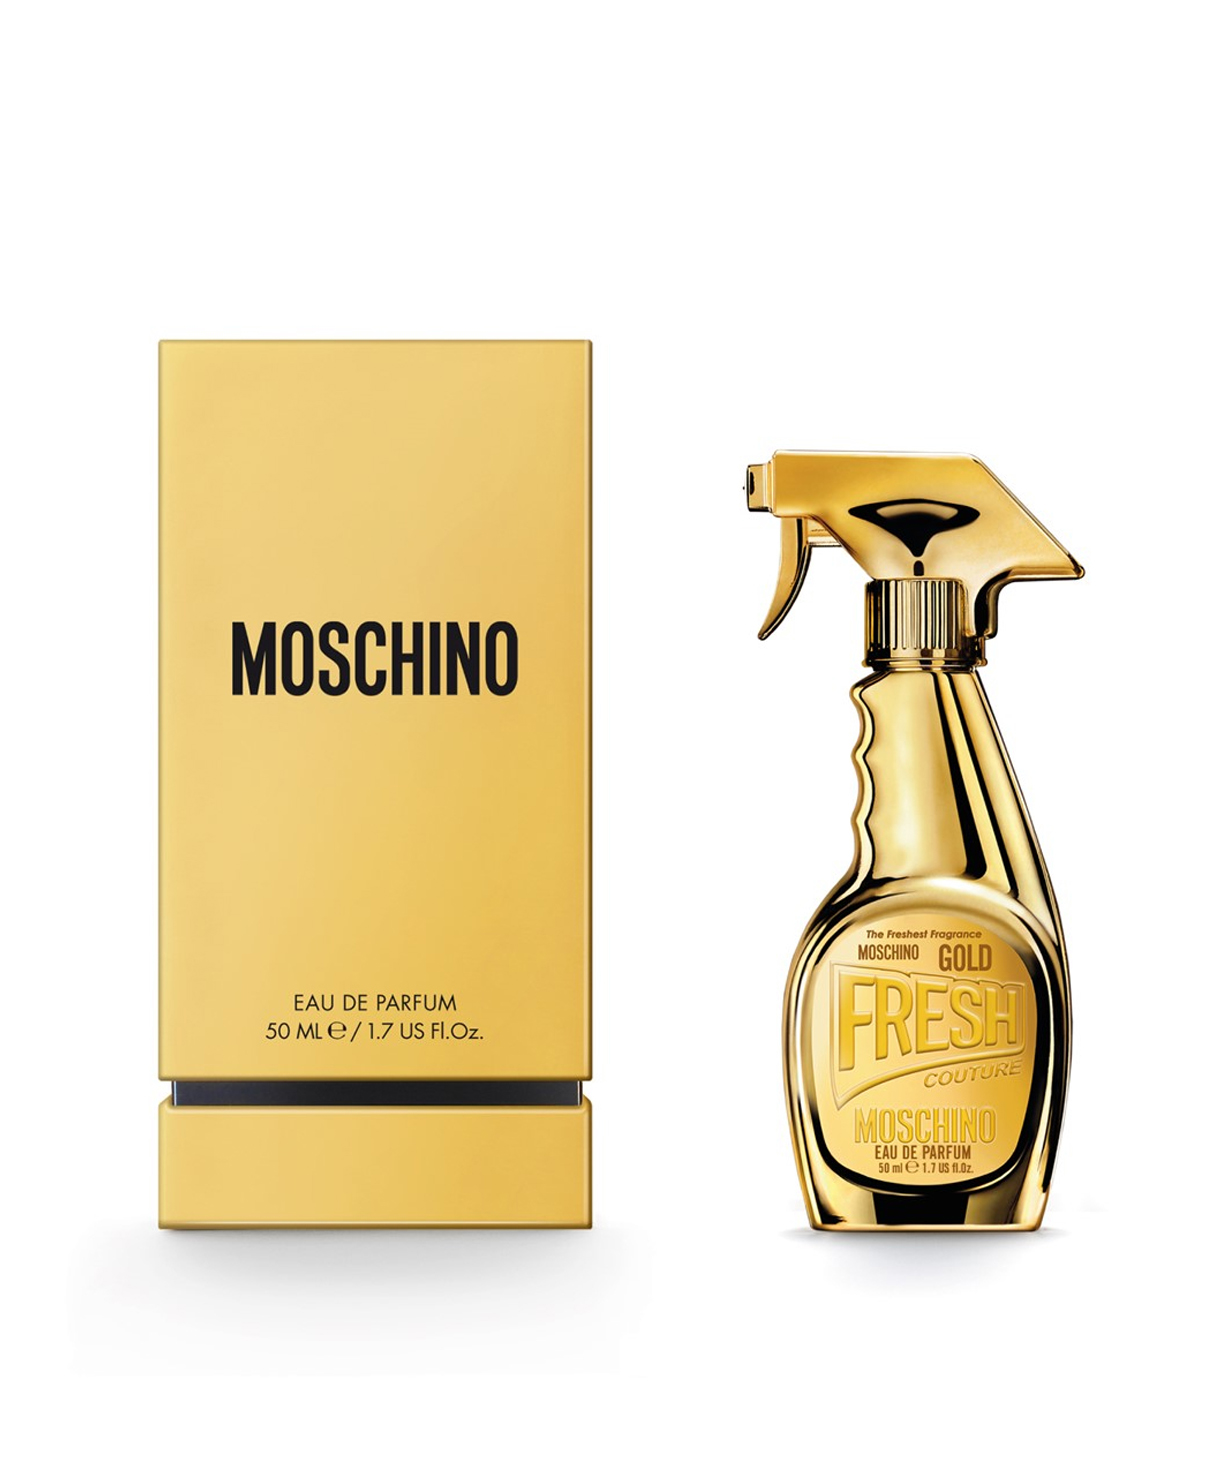 Օծանելիք «Moschino» Gold Fresh Couture, կանացի, 50 մլ